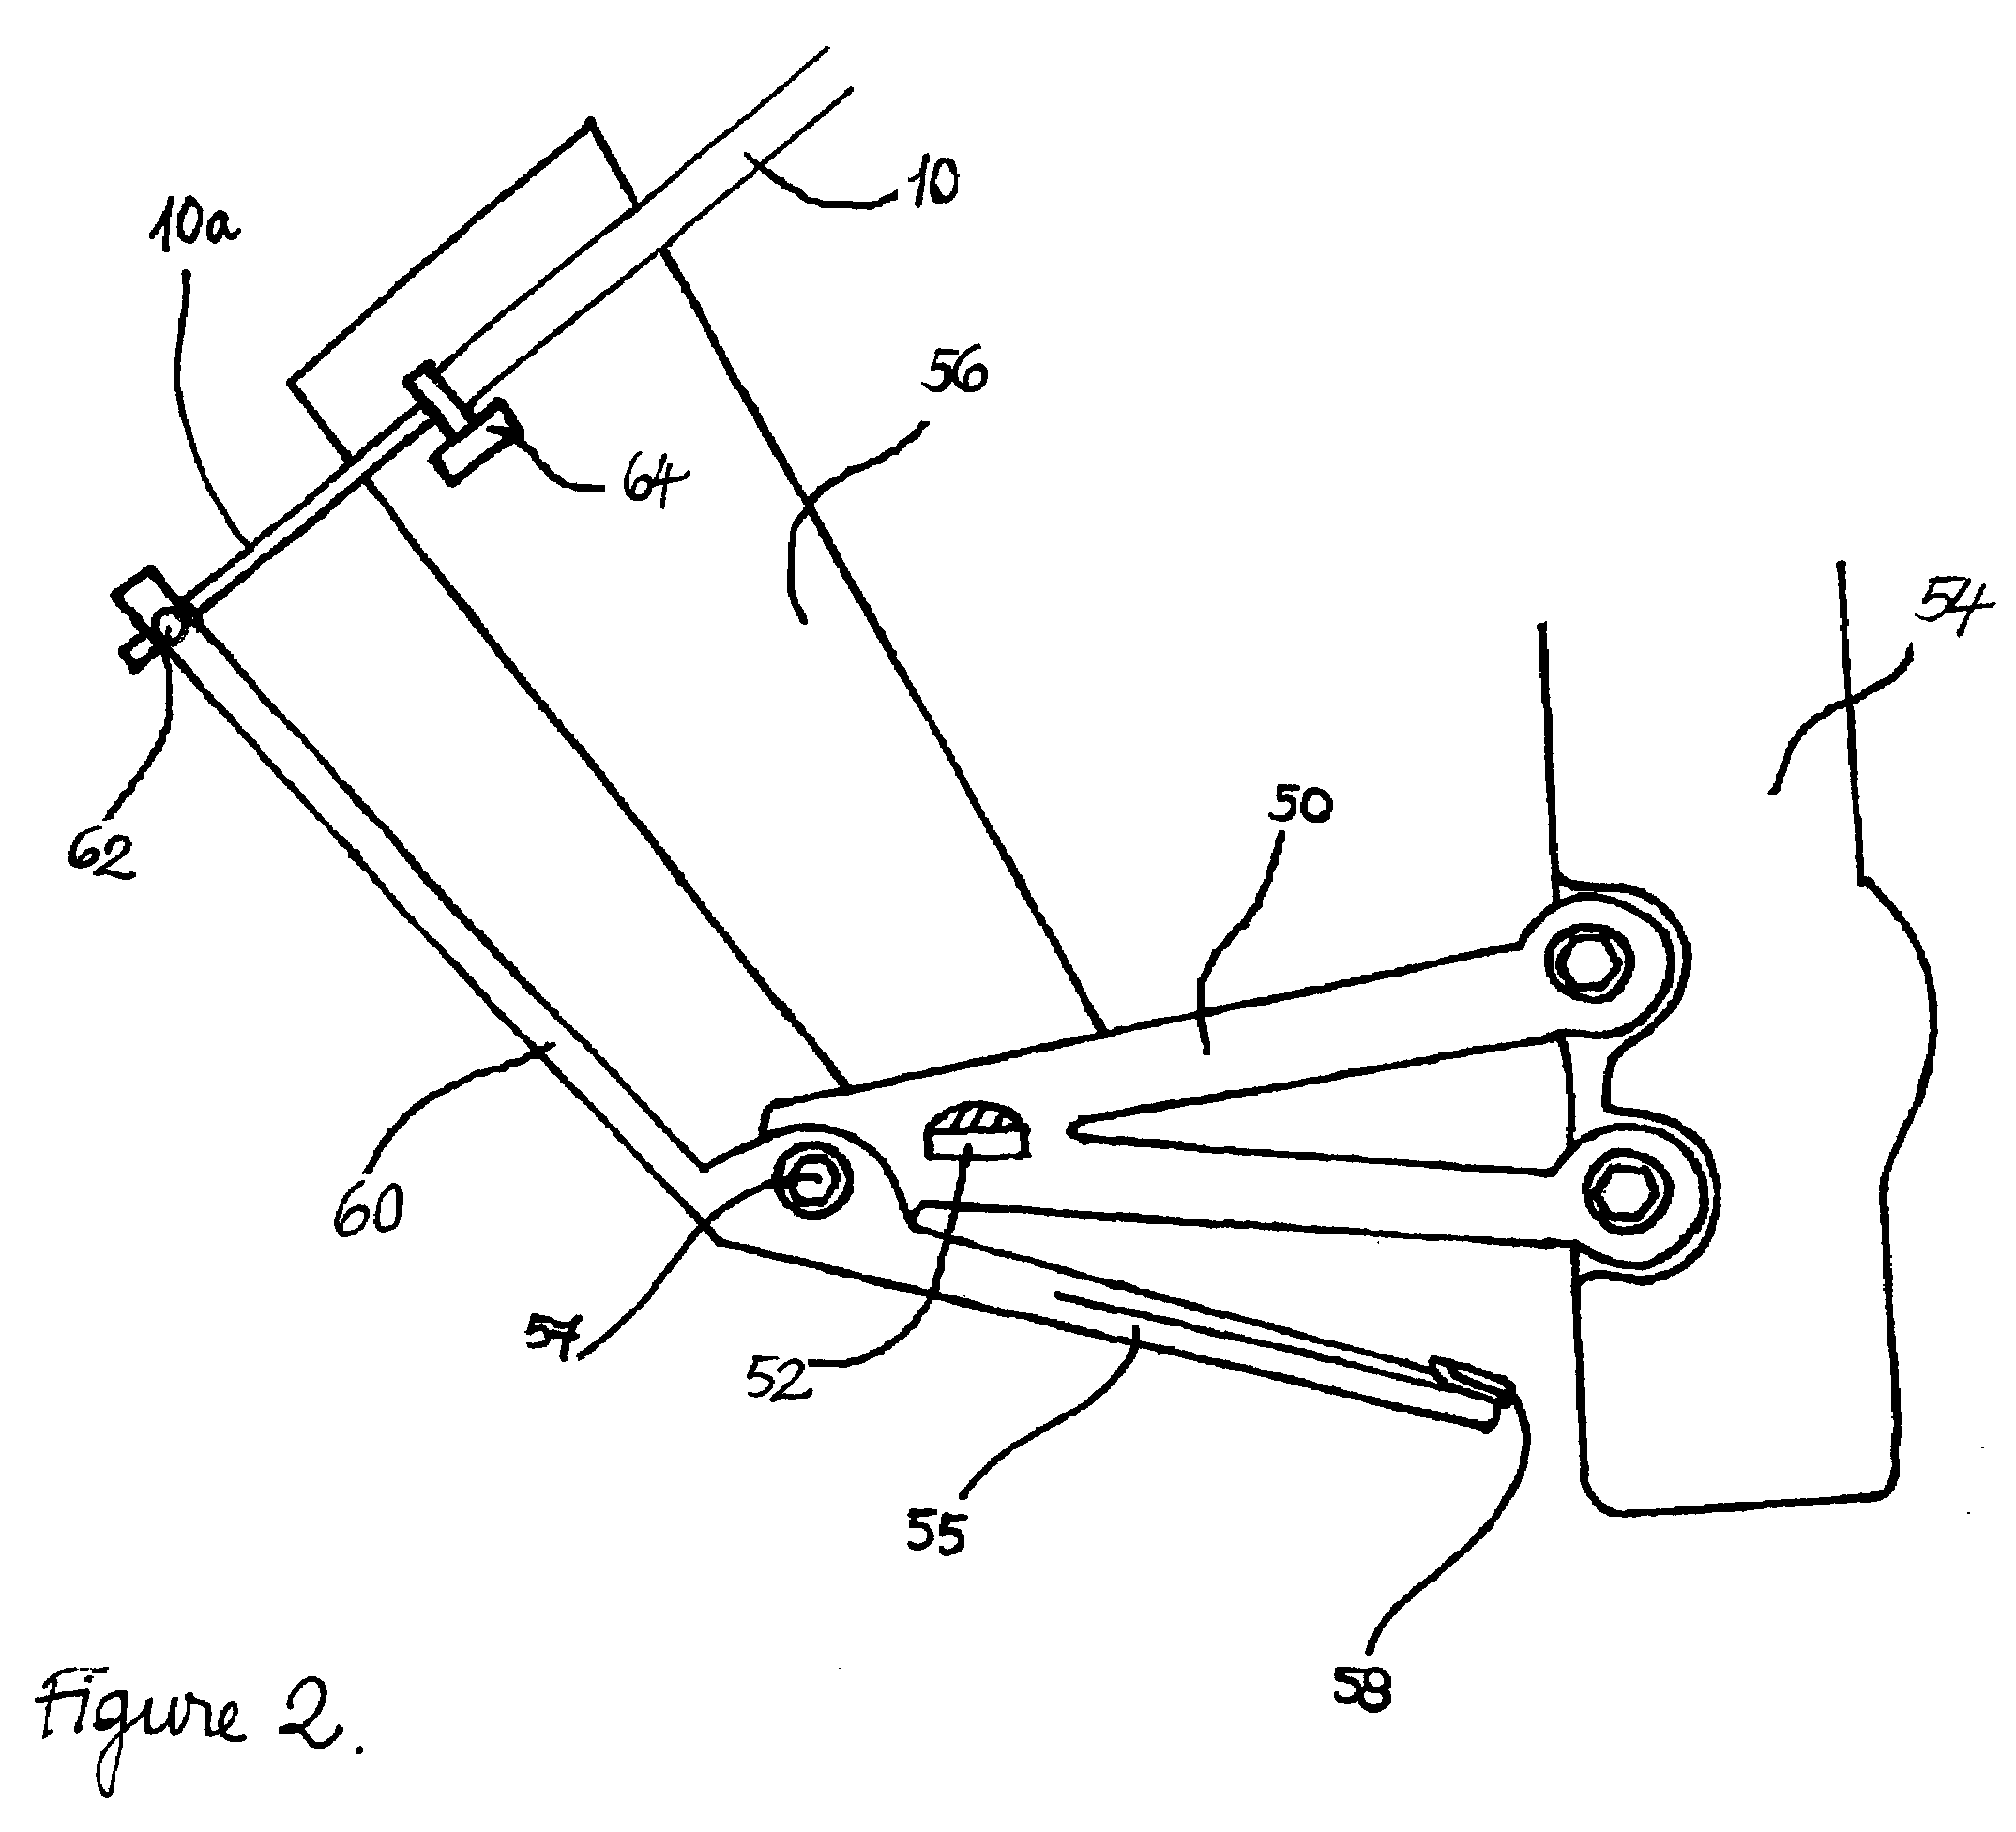 Motorcycle rear-wheel braking system operating mechanism